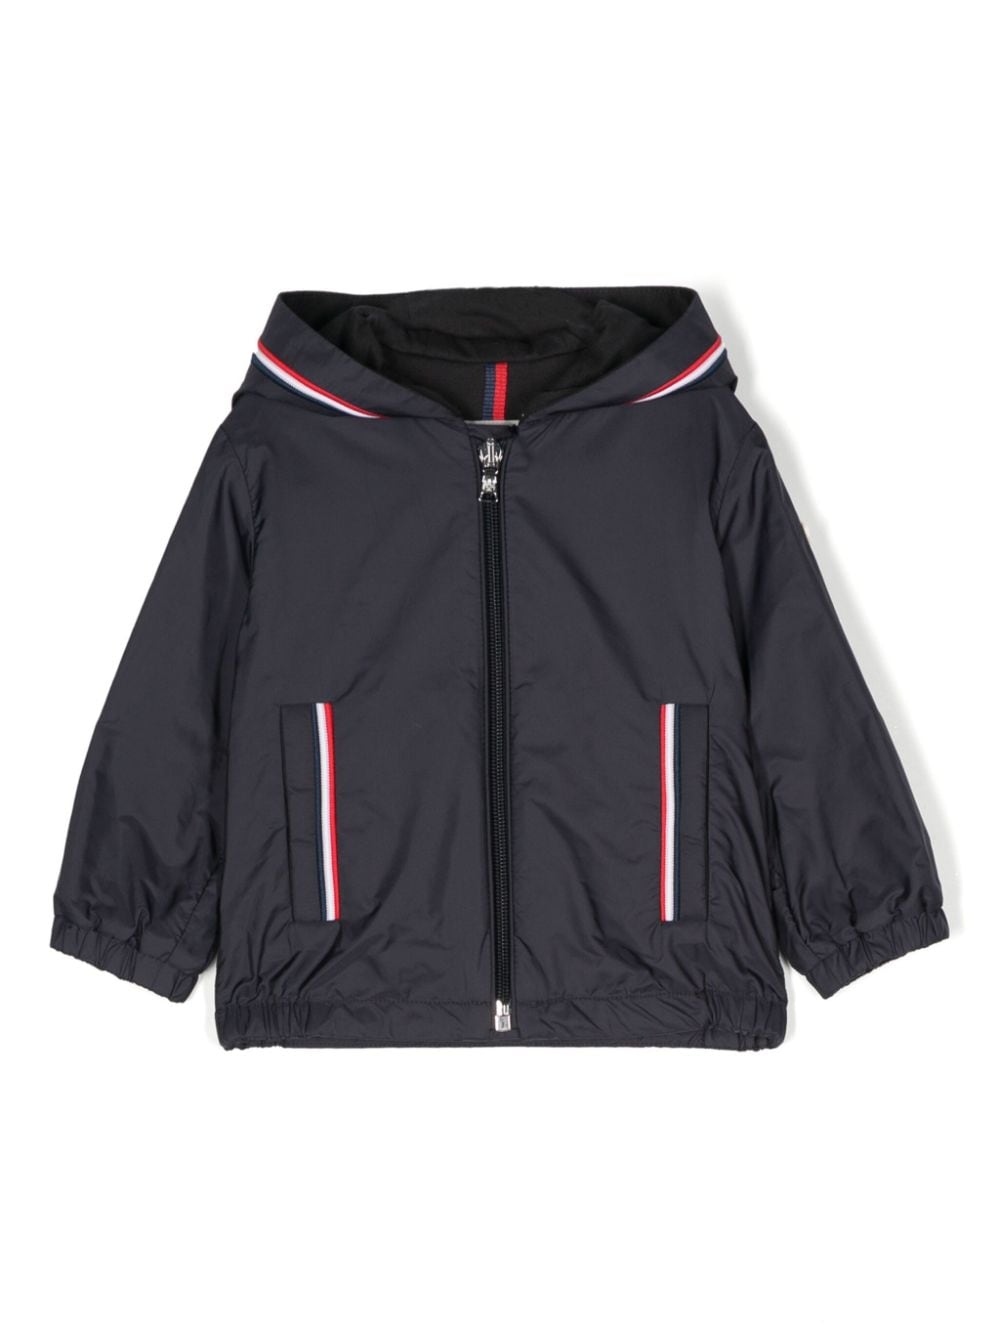 Branded zip-puller padded jacket<BR/><BR/><BR/>